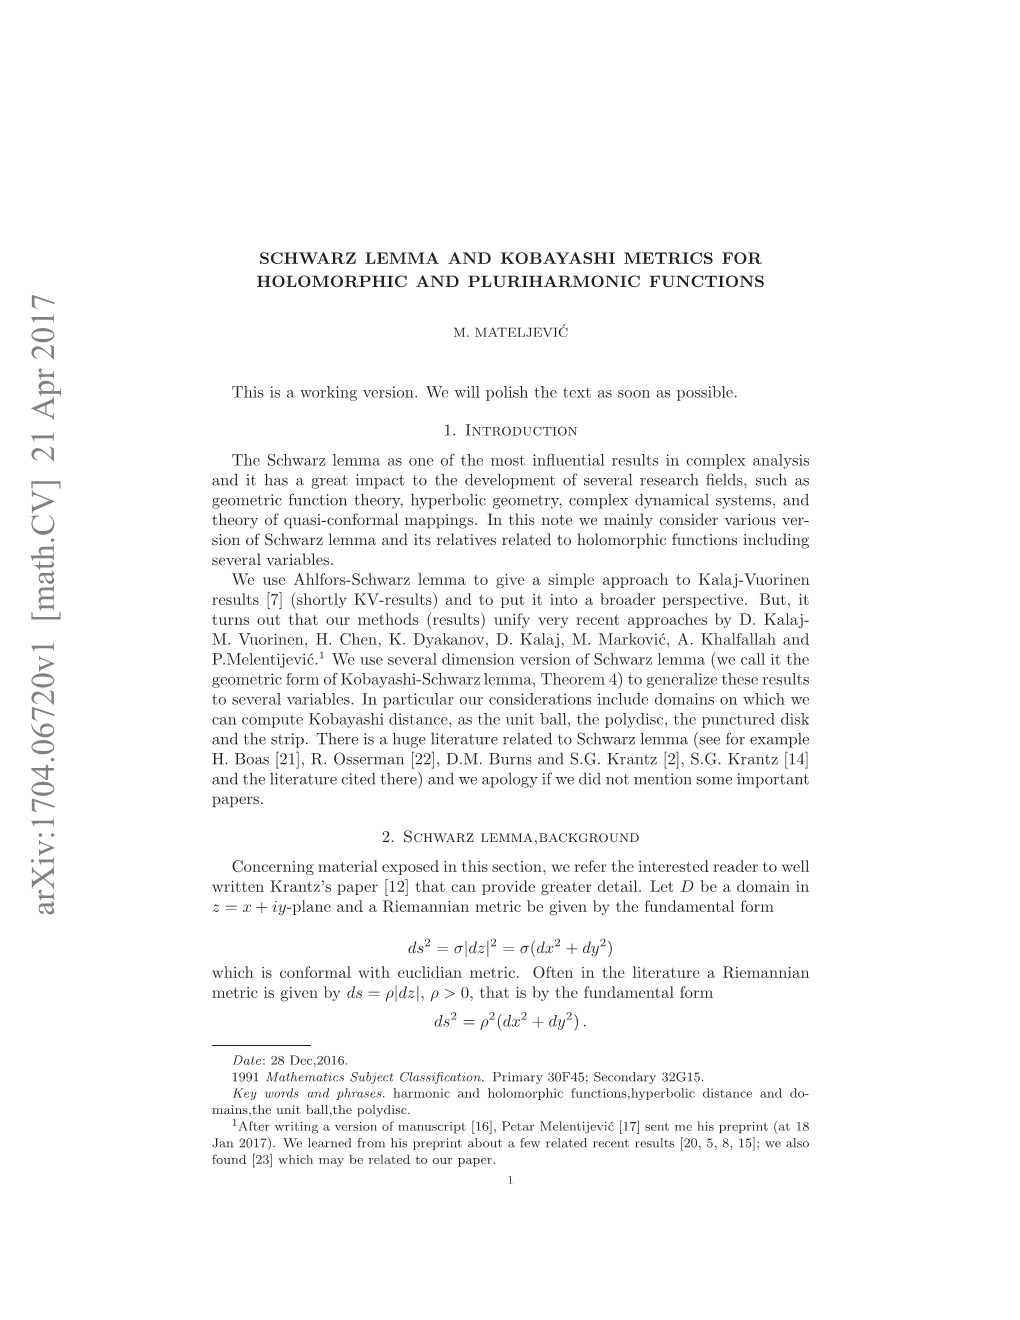 Schwarz Lemma and Kobayashi Metrics for Holomorphic And